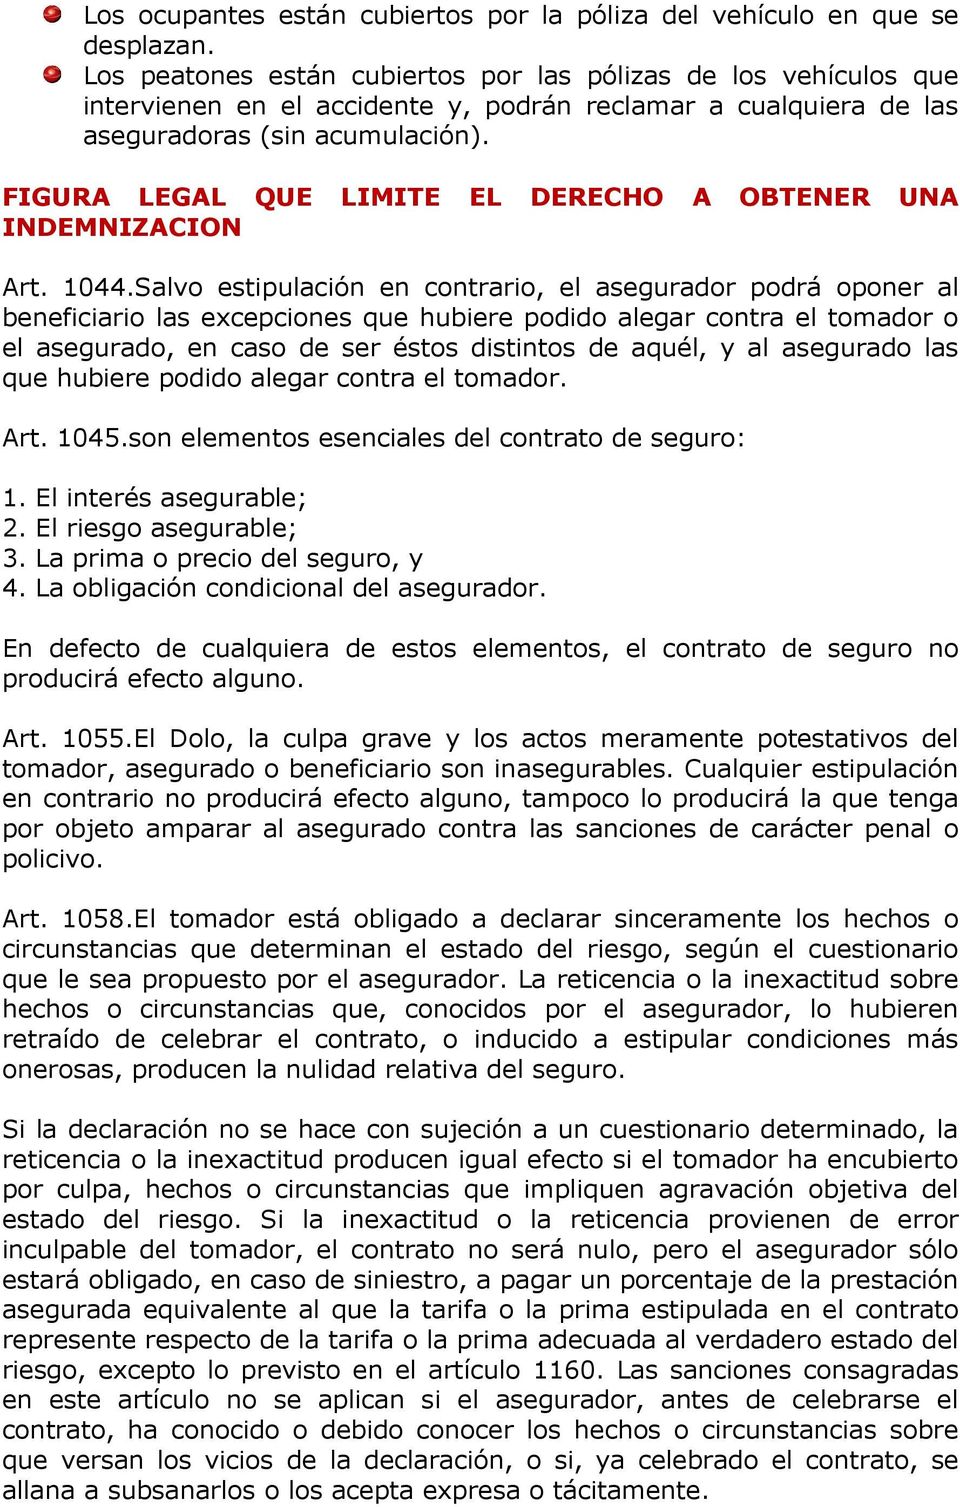 FIGURA LEGAL QUE LIMITE EL DERECHO A OBTENER UNA INDEMNIZACION Art. 1044.